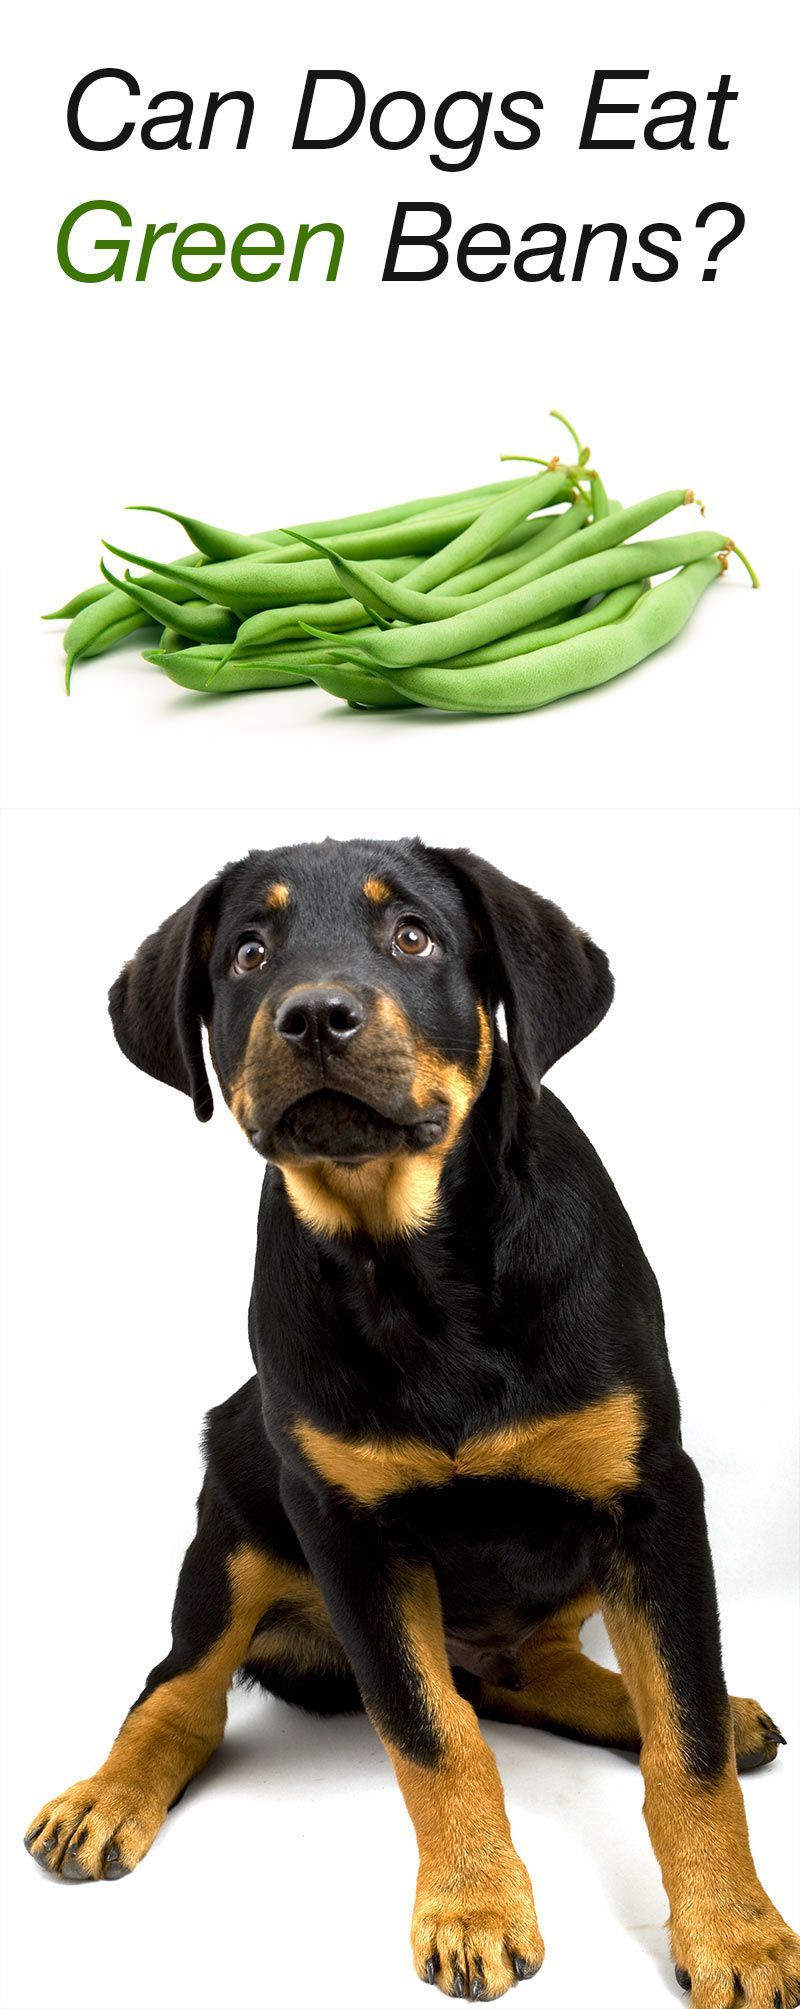 کیا کتے سبز پھلیاں کھا سکتے ہیں؟